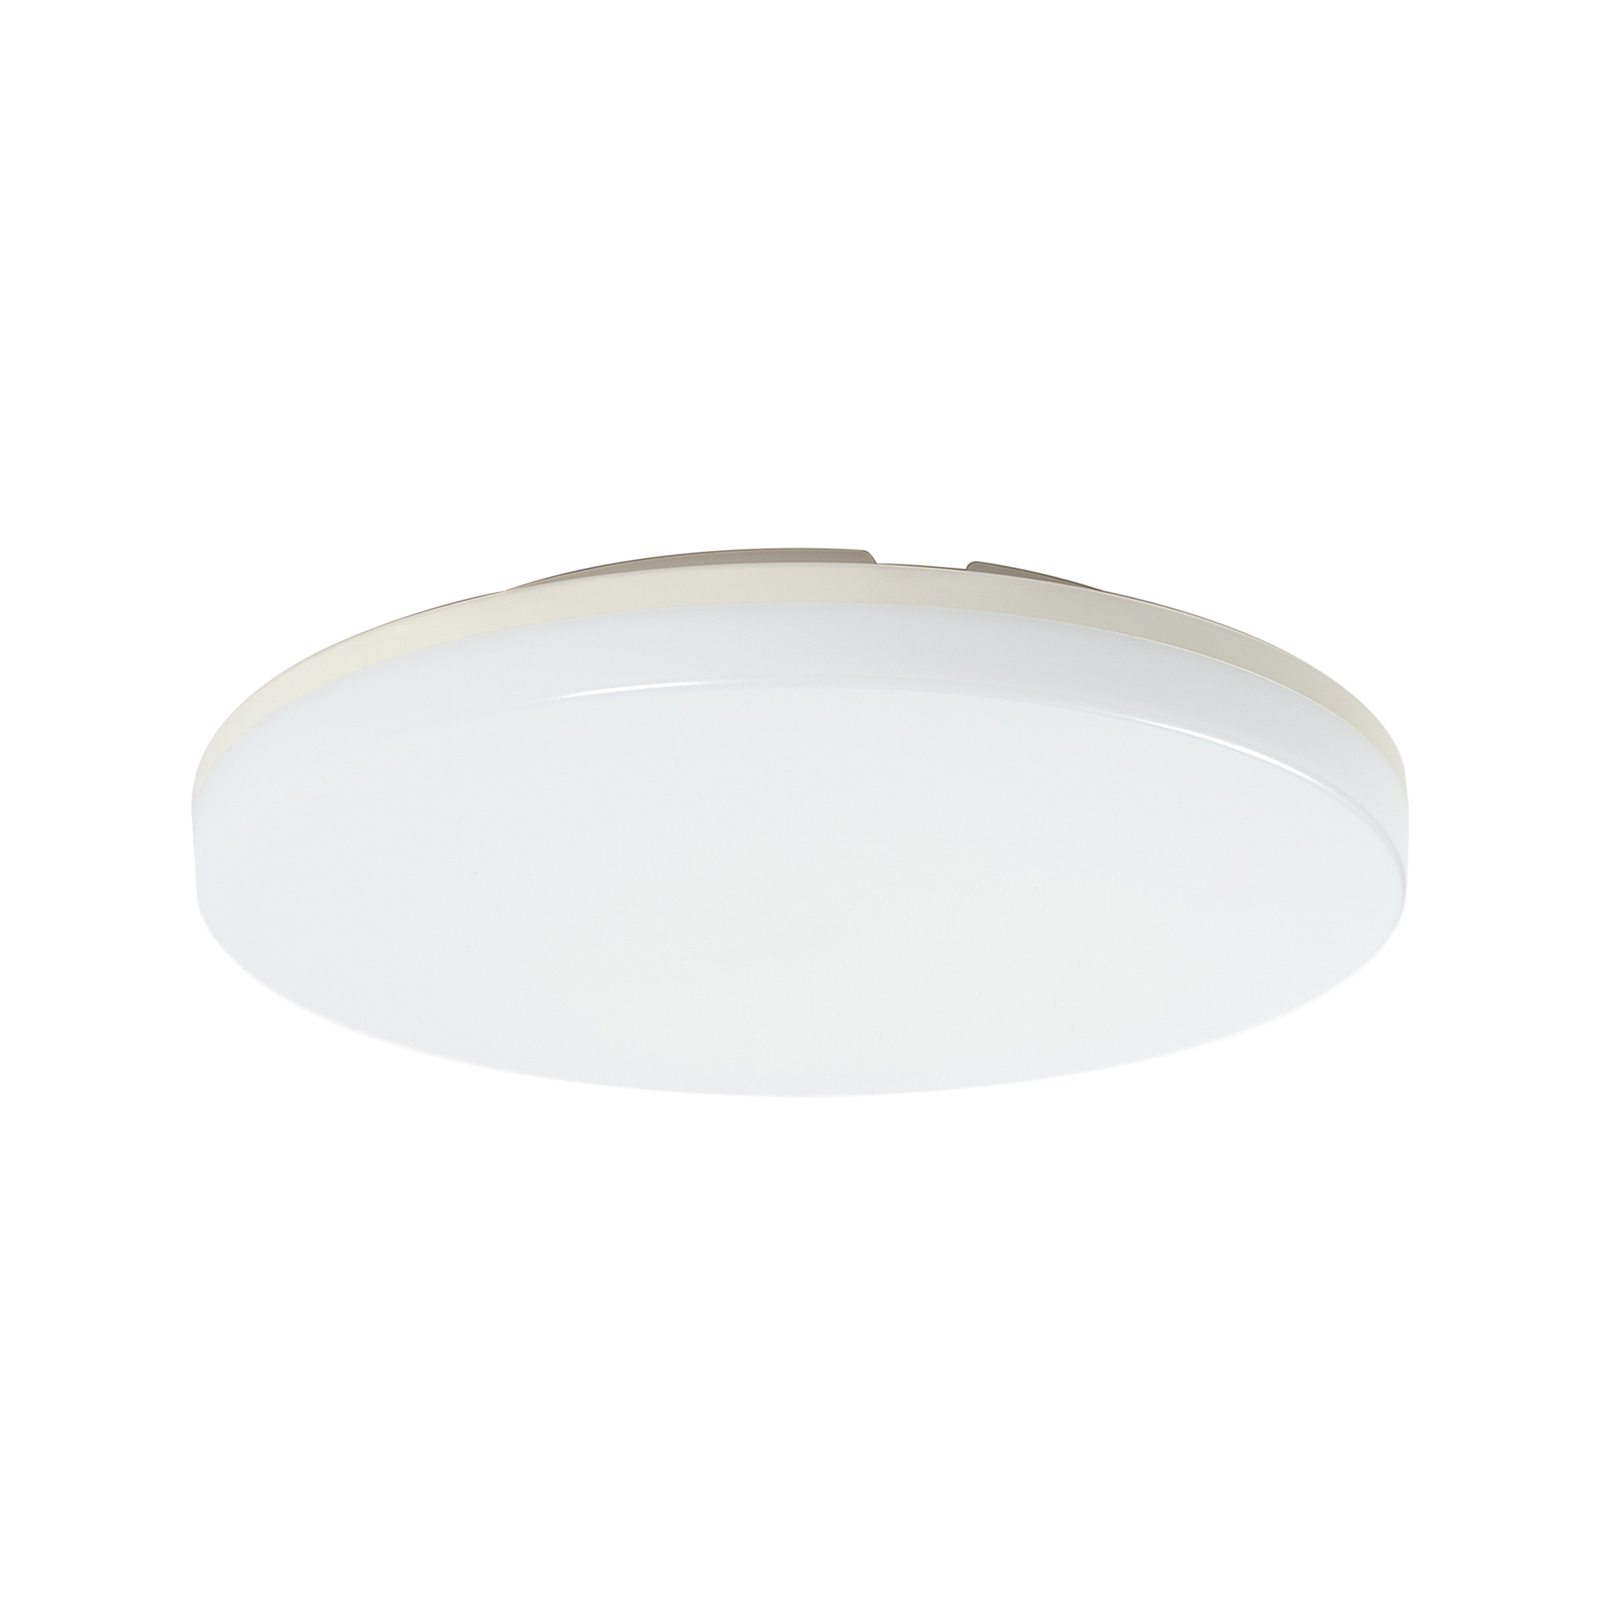 Prios Artin LED stropna svjetiljka, okrugla, 28 cm